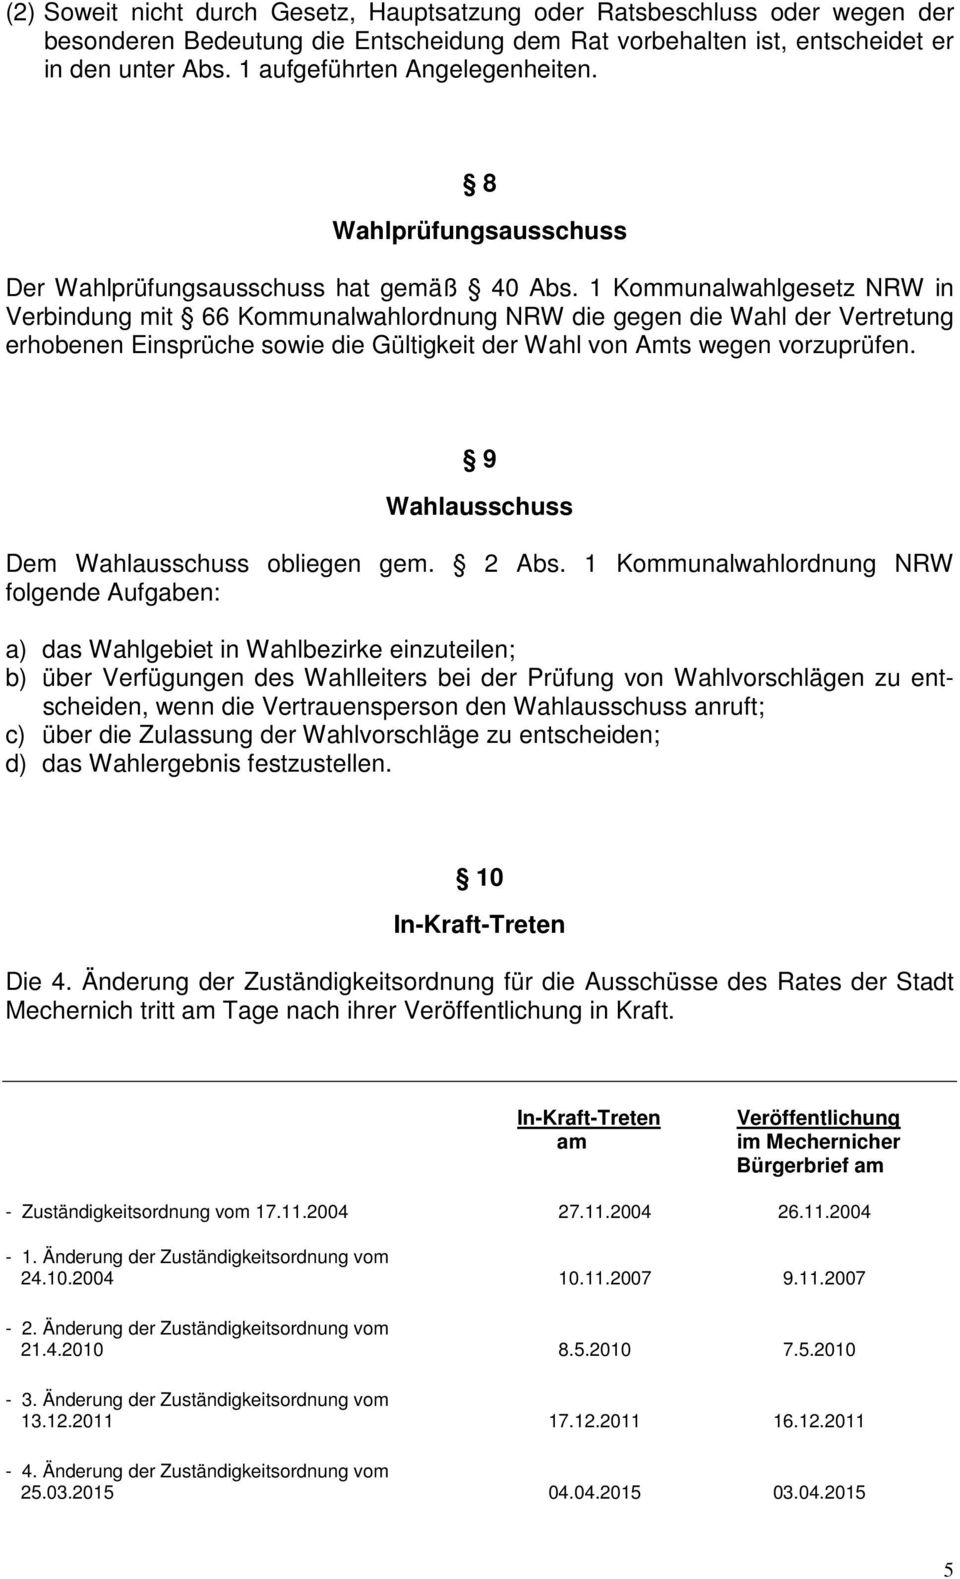 1 Kommunalwahlgesetz NRW in Verbindung mit 66 Kommunalwahlordnung NRW die gegen die Wahl der Vertretung erhobenen Einsprüche sowie die Gültigkeit der Wahl von Amts wegen vorzuprüfen.